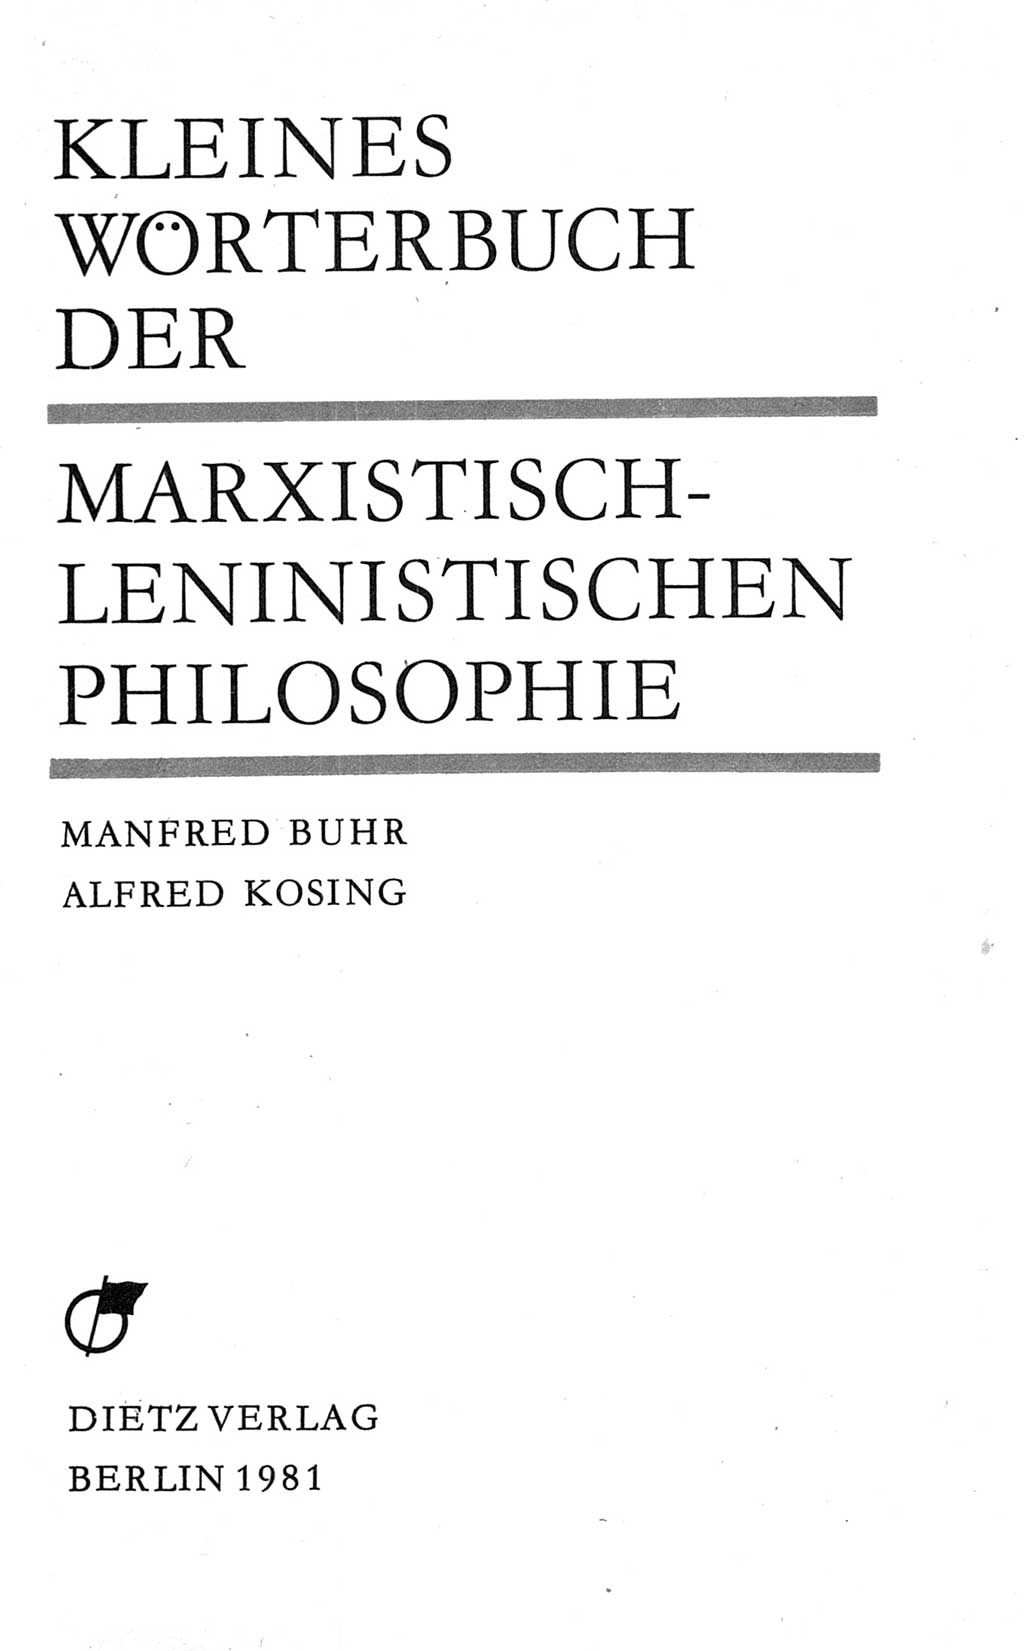 Kleines Wörterbuch der marxistisch-leninistischen Philosophie [Deutsche Demokratische Republik (DDR)] 1981, Seite 3 (Kl. Wb. ML Phil. DDR 1981, S. 3)